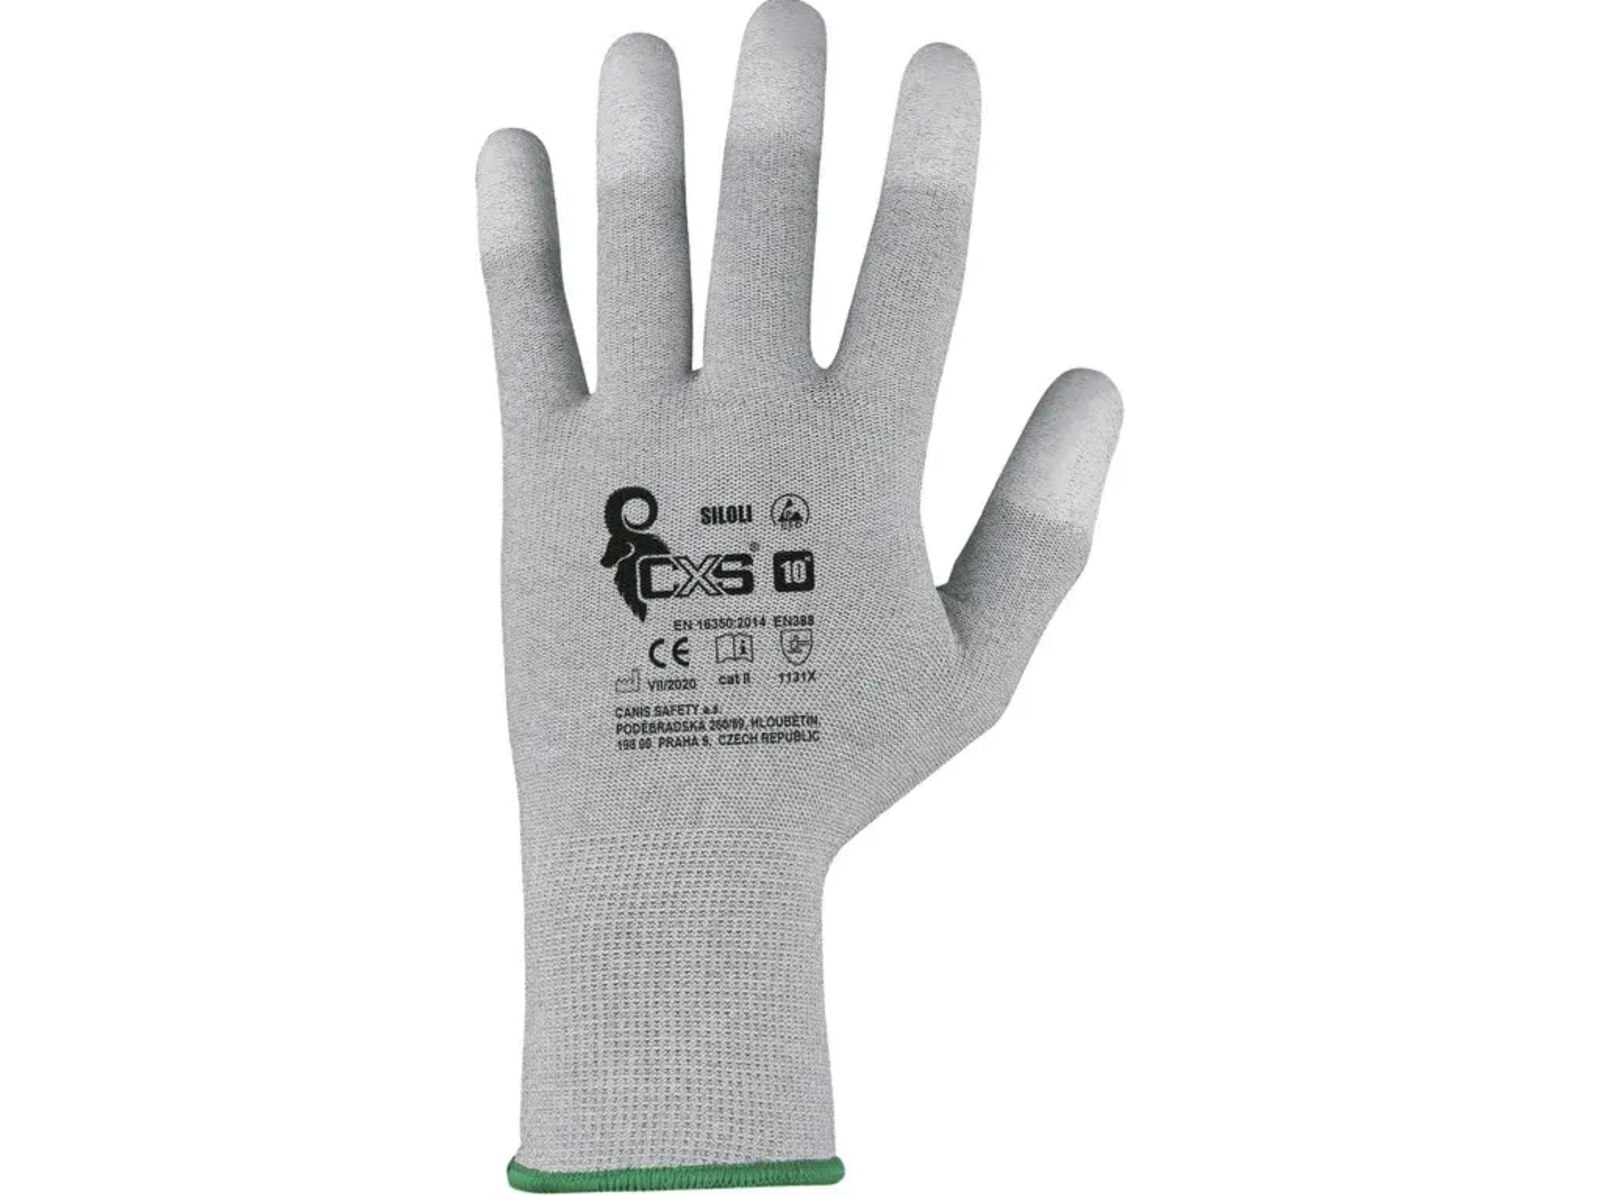 Povrstvené antistatické rukavice CXS Siloli - veľkosť: 11/XXL, farba: sivá